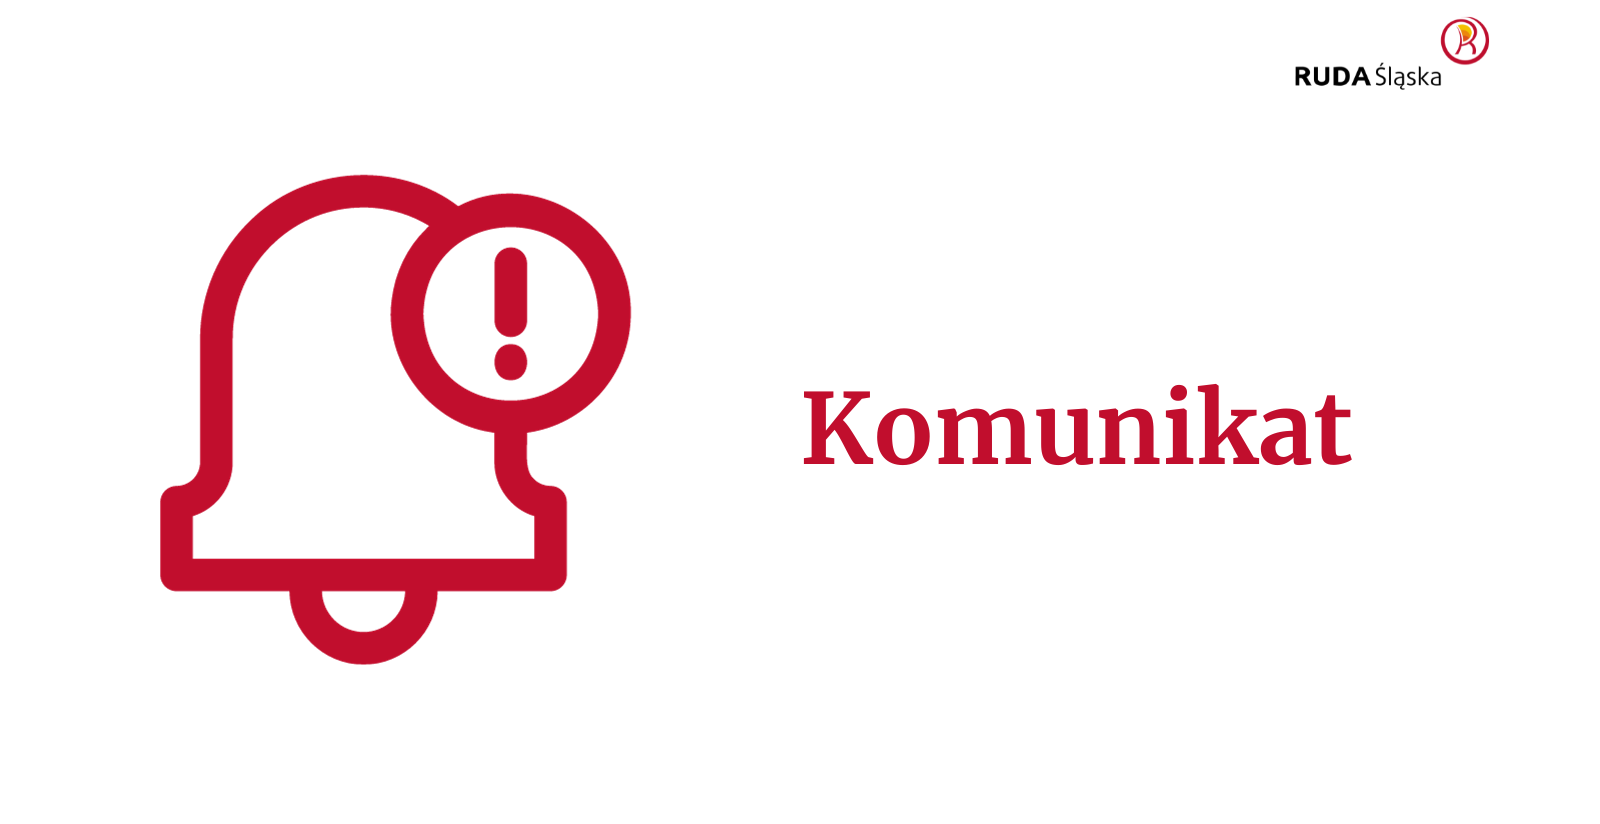 Na białym tle czerwony rysunek dzwonka oraz kółko z wykrzyknikiem w środku. Obok grafiki napis: Komunikat. W prawym górnym rogu logo miasta Ruda Śląska.